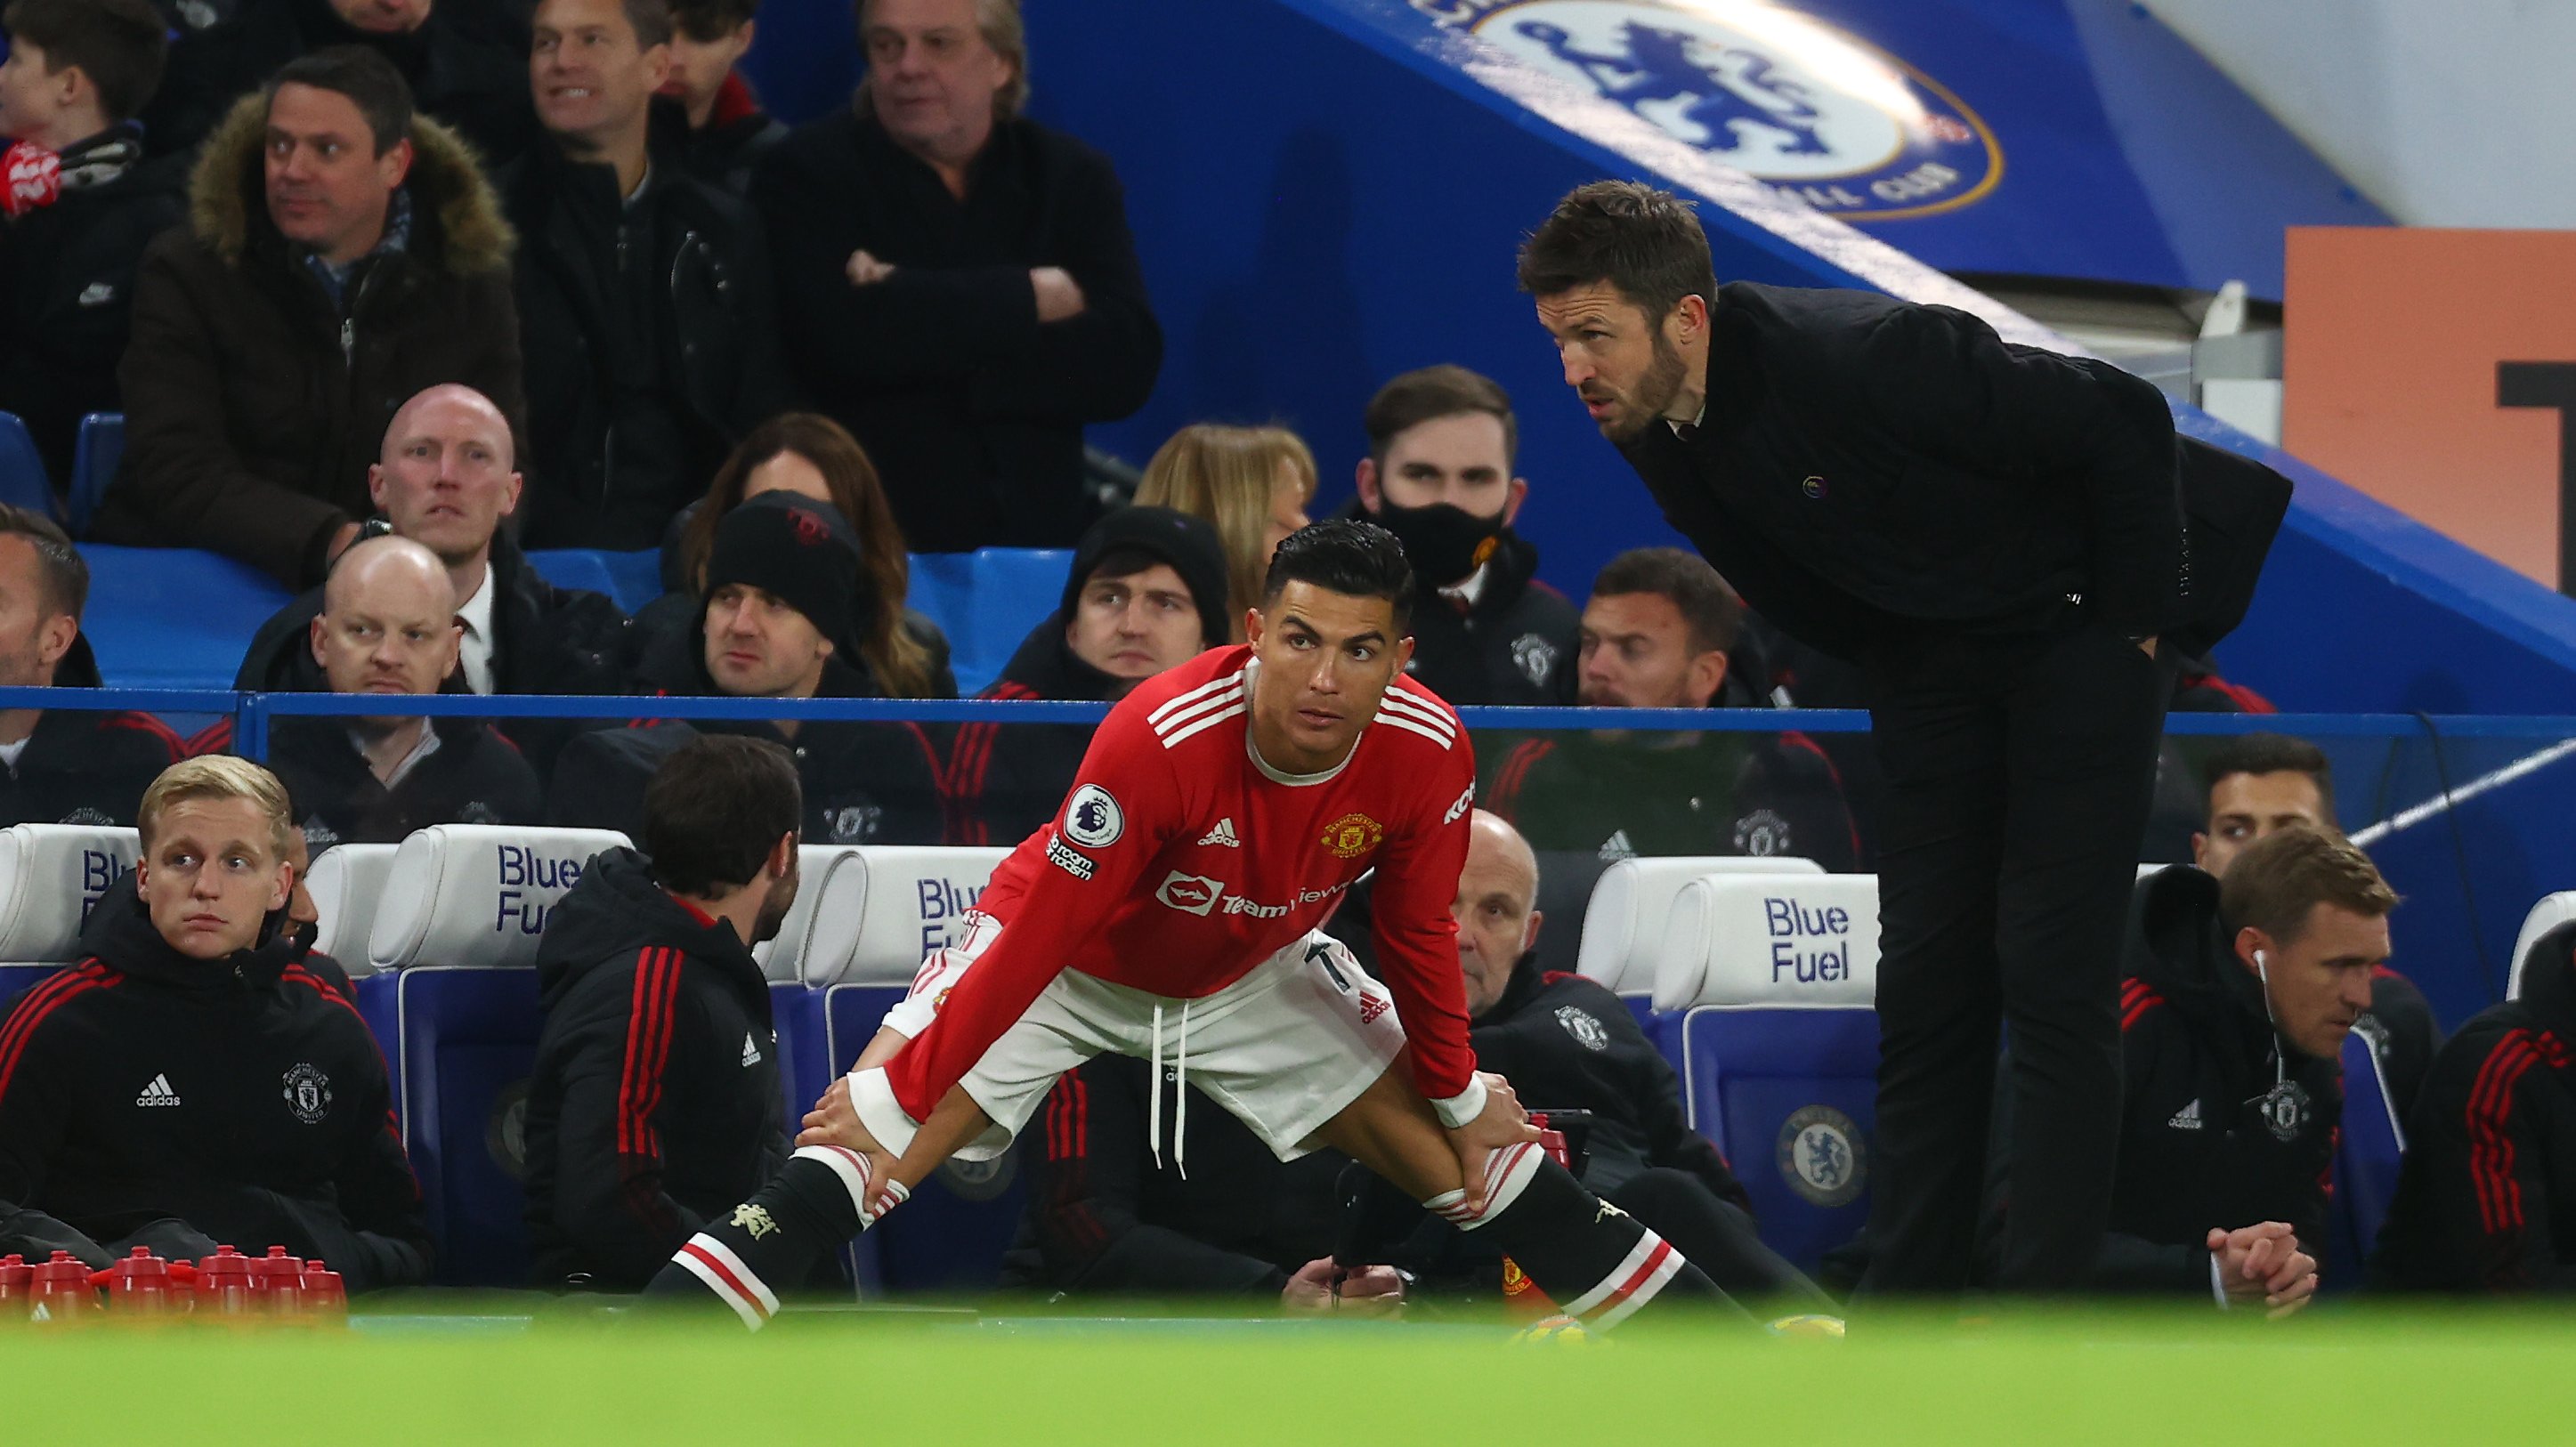 Ronaldo foi a grande surpresa ao começar no banco frente ao Chelsea, entrando a 25 minutos do final sem aparecer no jogo